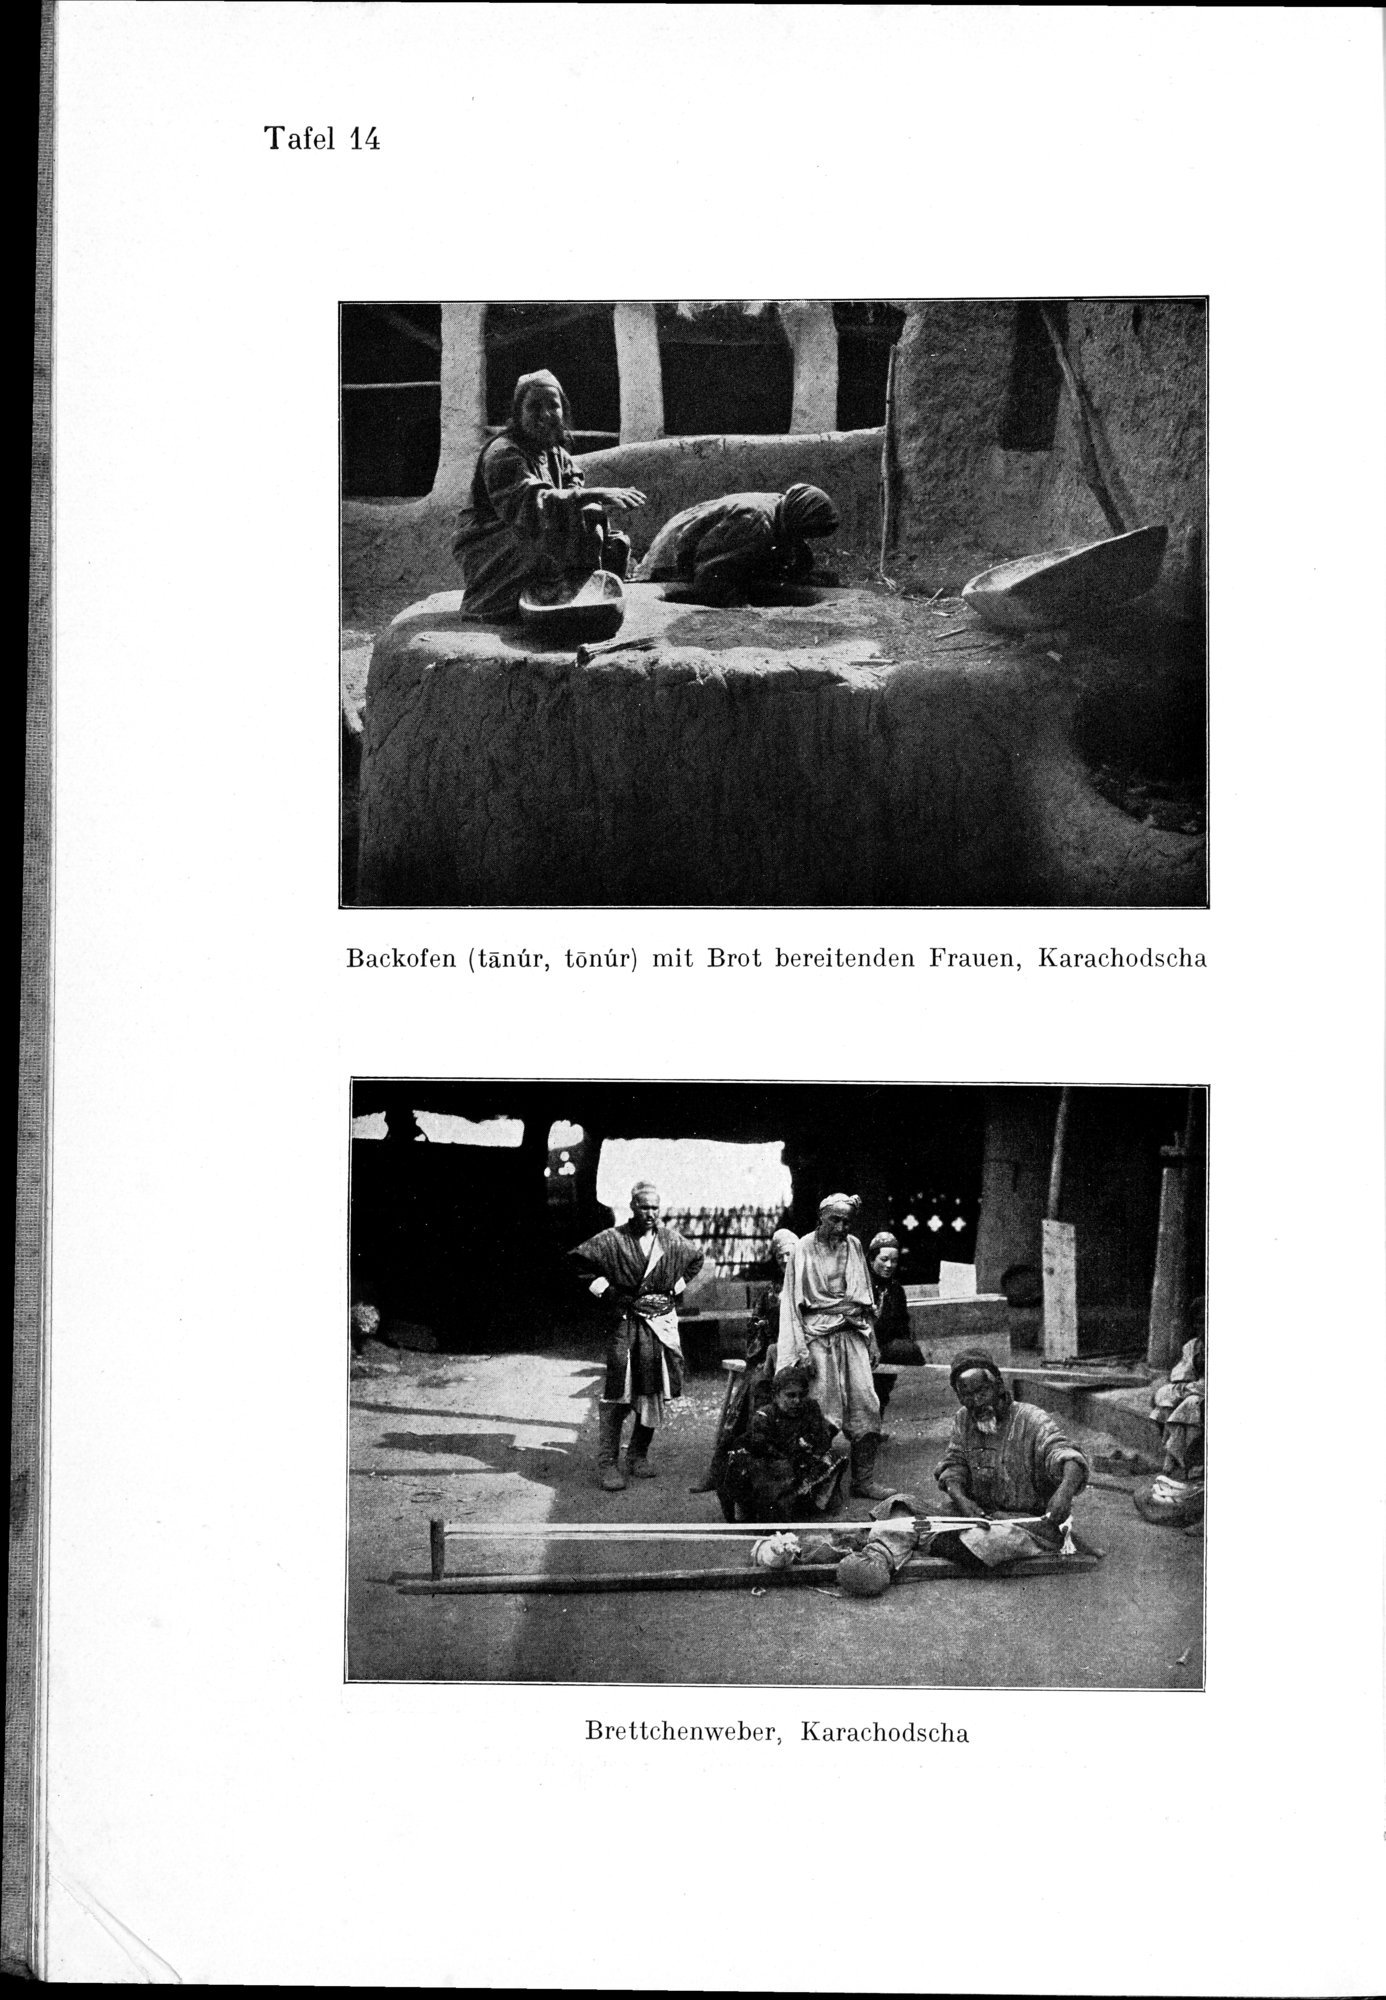 Auf Hellas Spuren in Ostturkistan : vol.1 / Page 86 (Grayscale High Resolution Image)